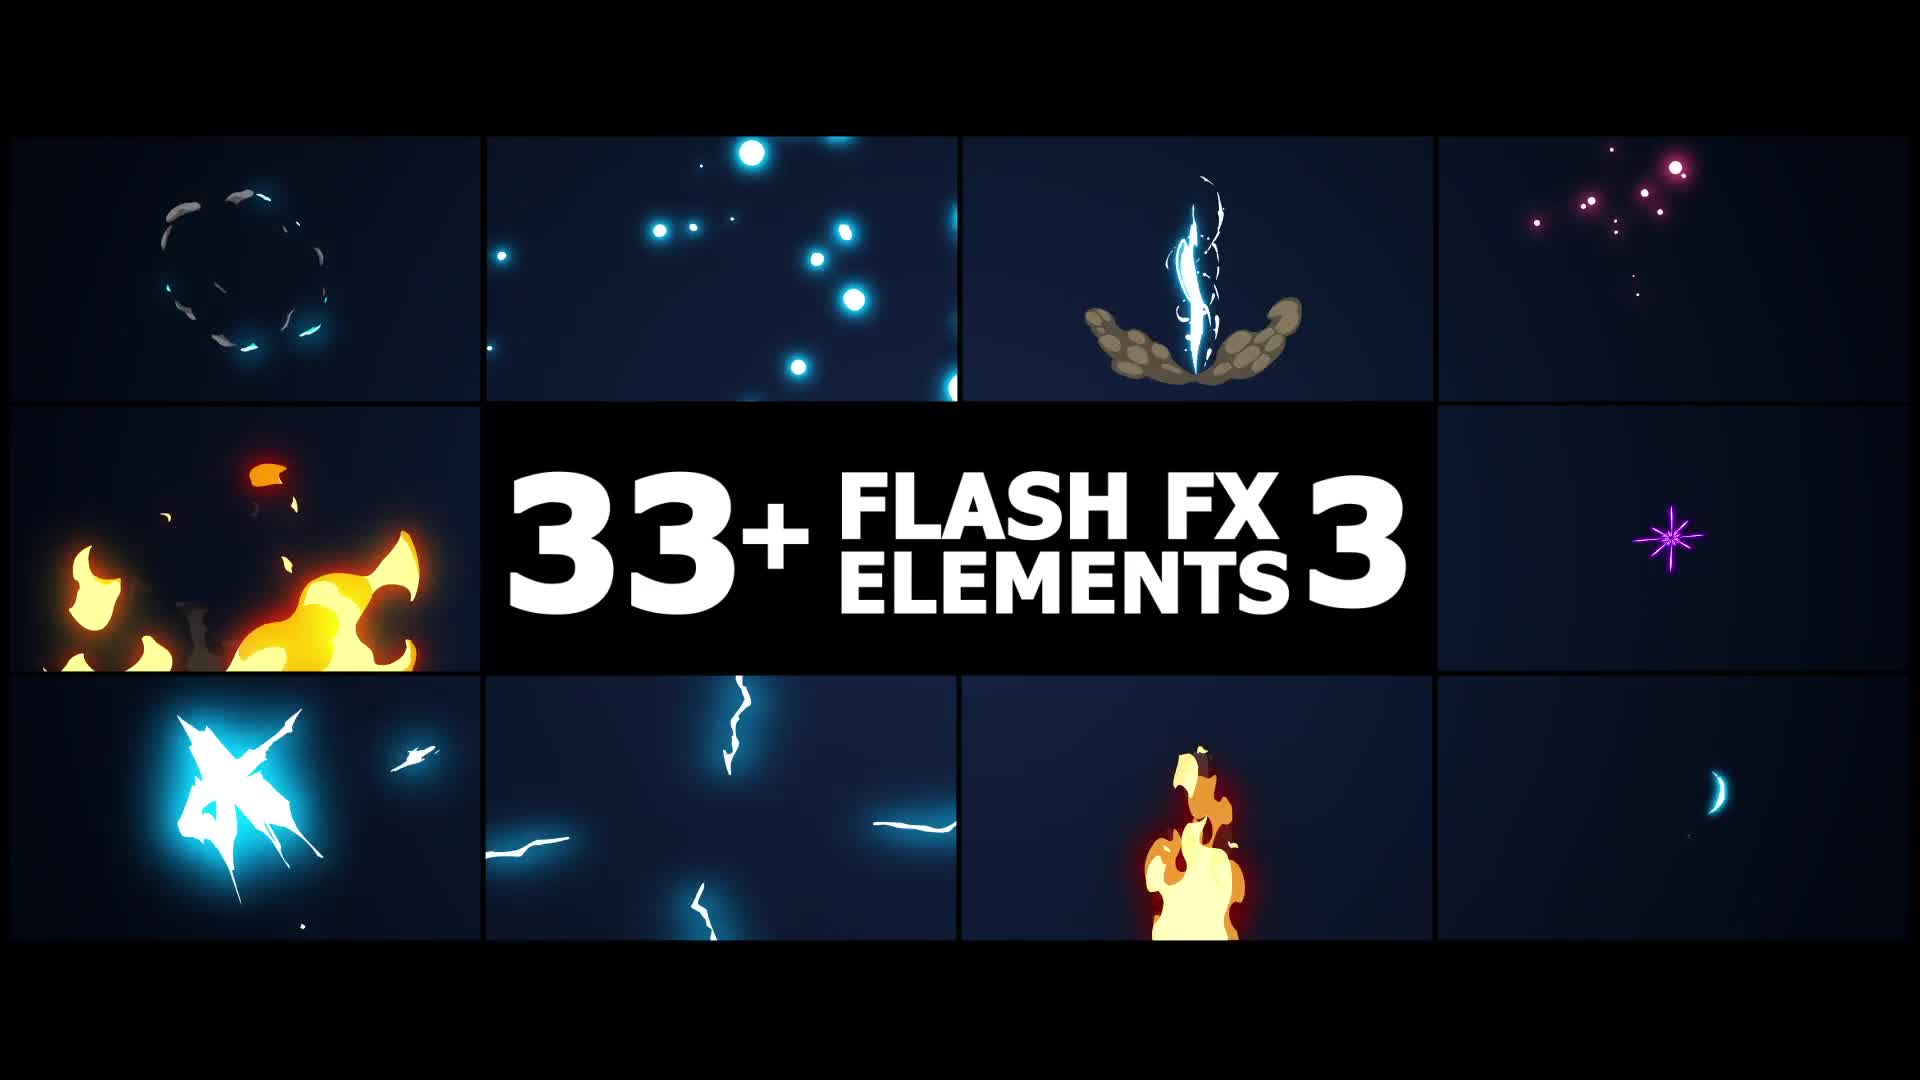 Flash FX Elements Pack 03 | Premiere Pro MOGRT Videohive 39206720 Premiere Pro Image 1